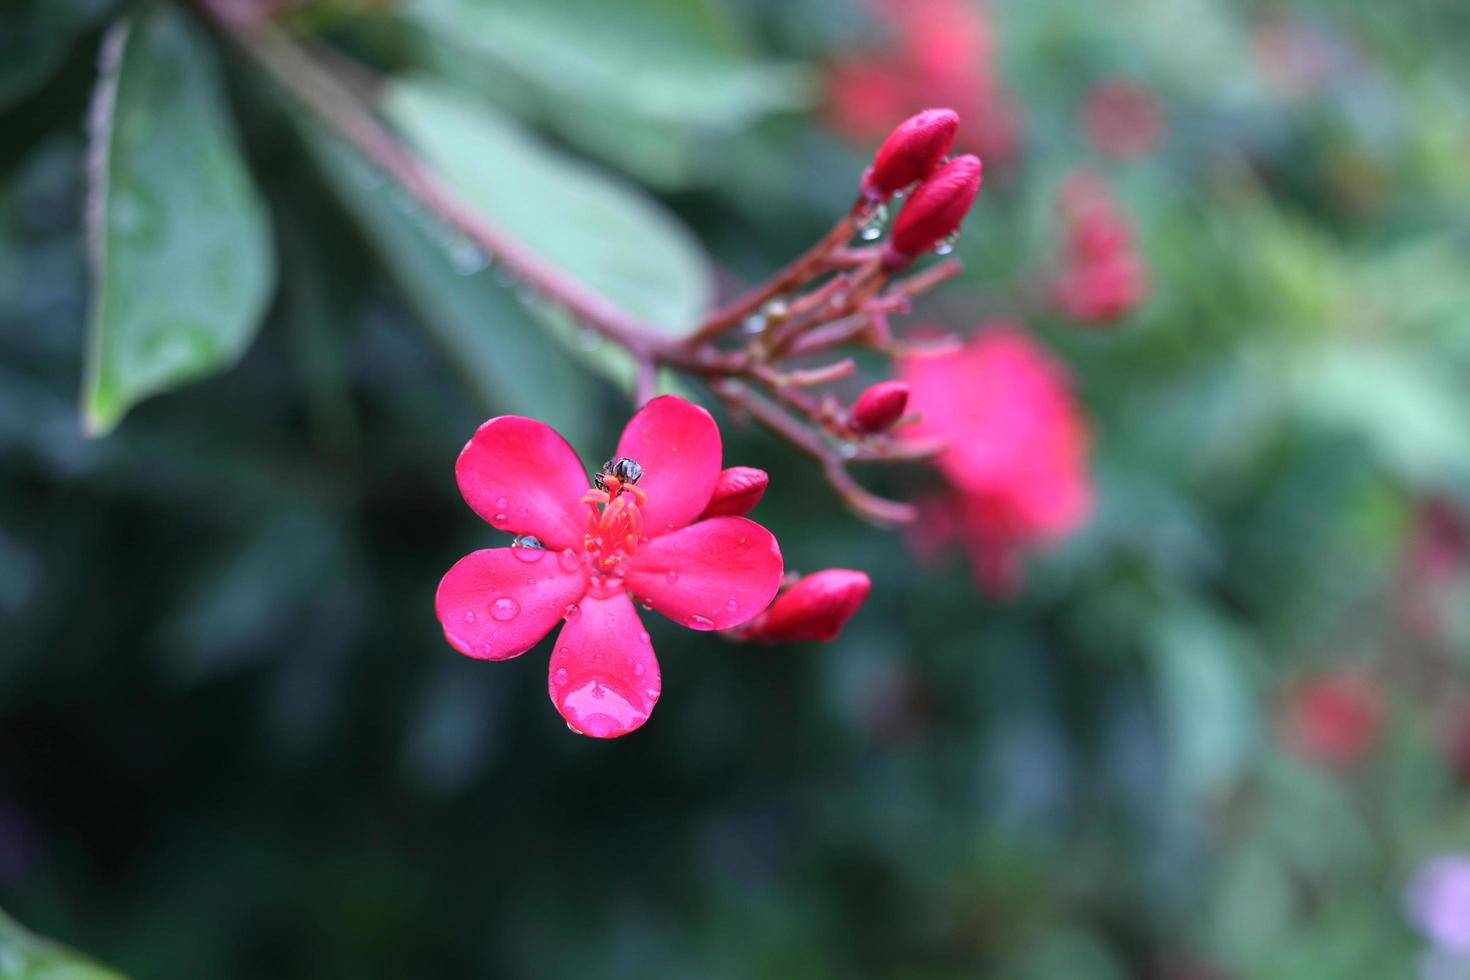 flores rojas de jatrofa especiada o jatrofa de hojas de algodón y fondo de hojas verdes. las gotas de agua están en el pétalo de la flor. foto